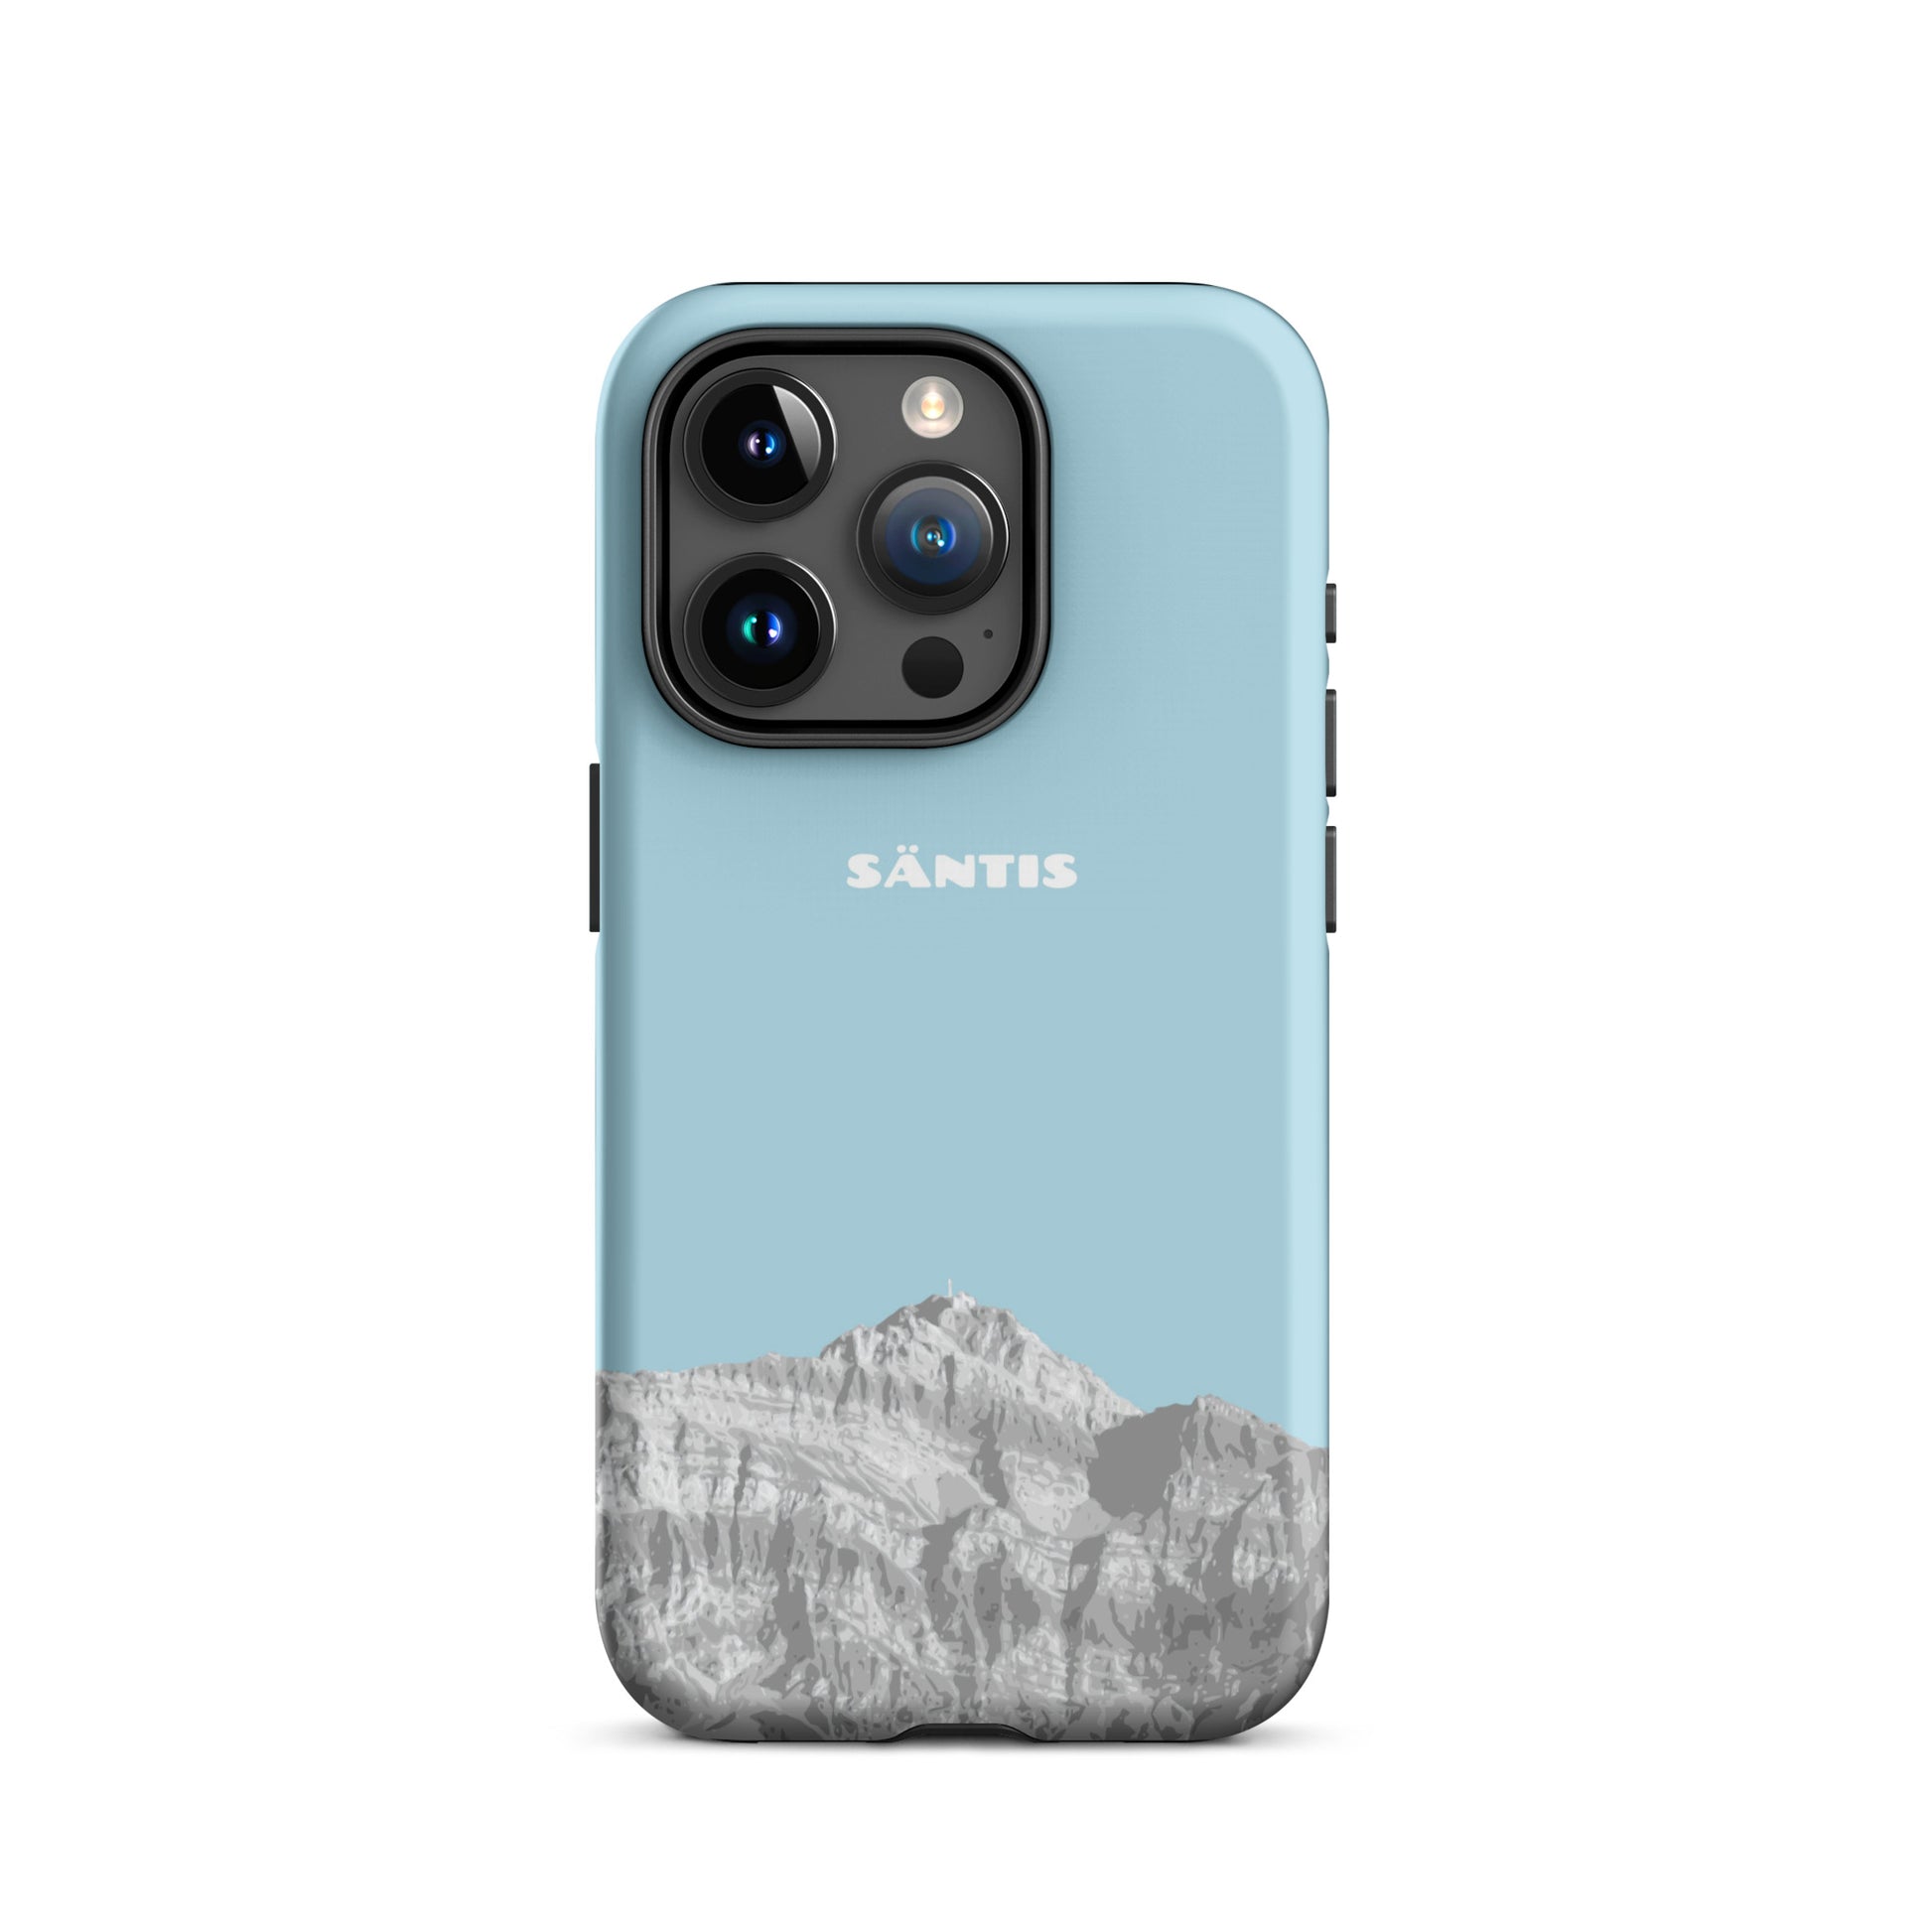 Hülle für das iPhone 15 Pro von Apple in der Farbe Hellblau, dass den Säntis im Alpstein zeigt.